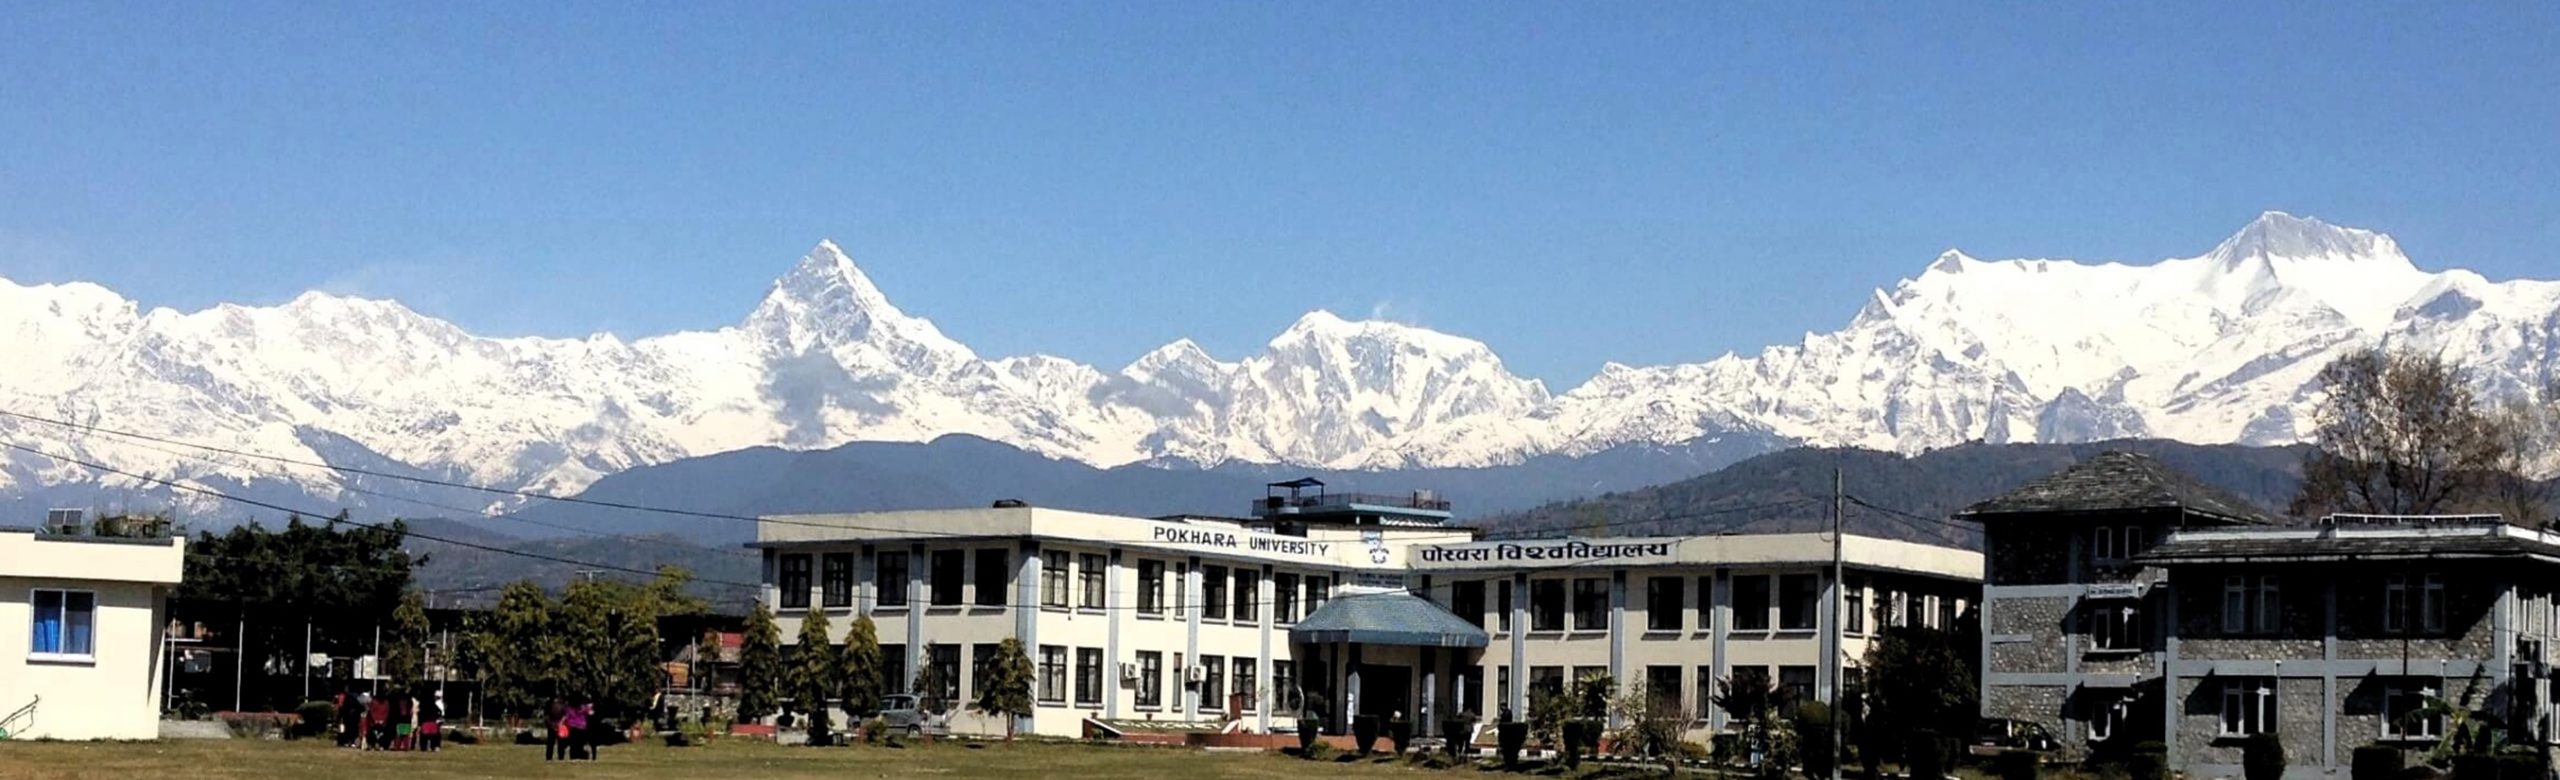 Pokhara University Scholarship Portal